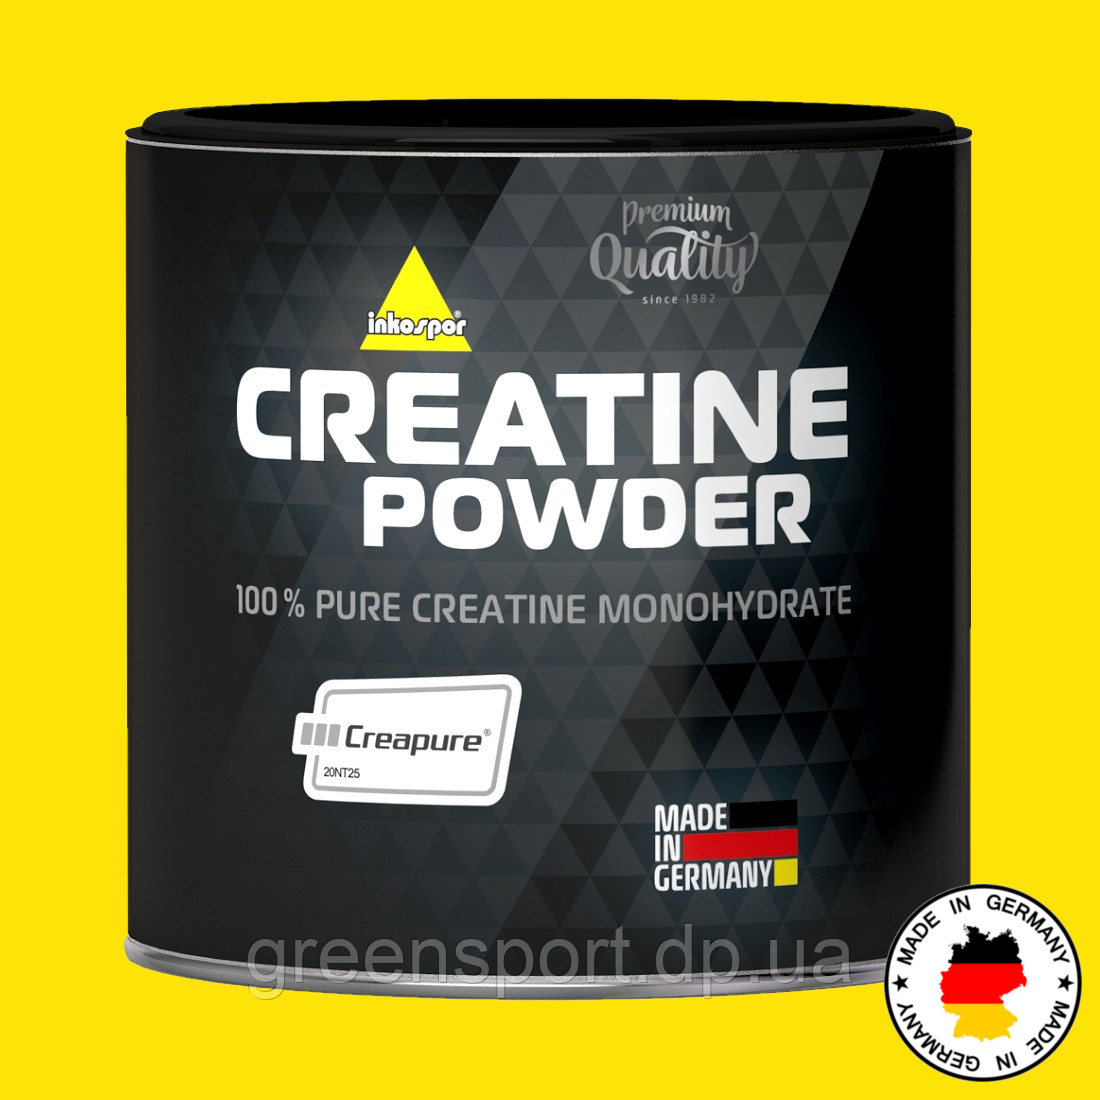 Inkospor Creatine Powder 500 г, креатин моногідрат, при заняттях спортом та тренуваннях